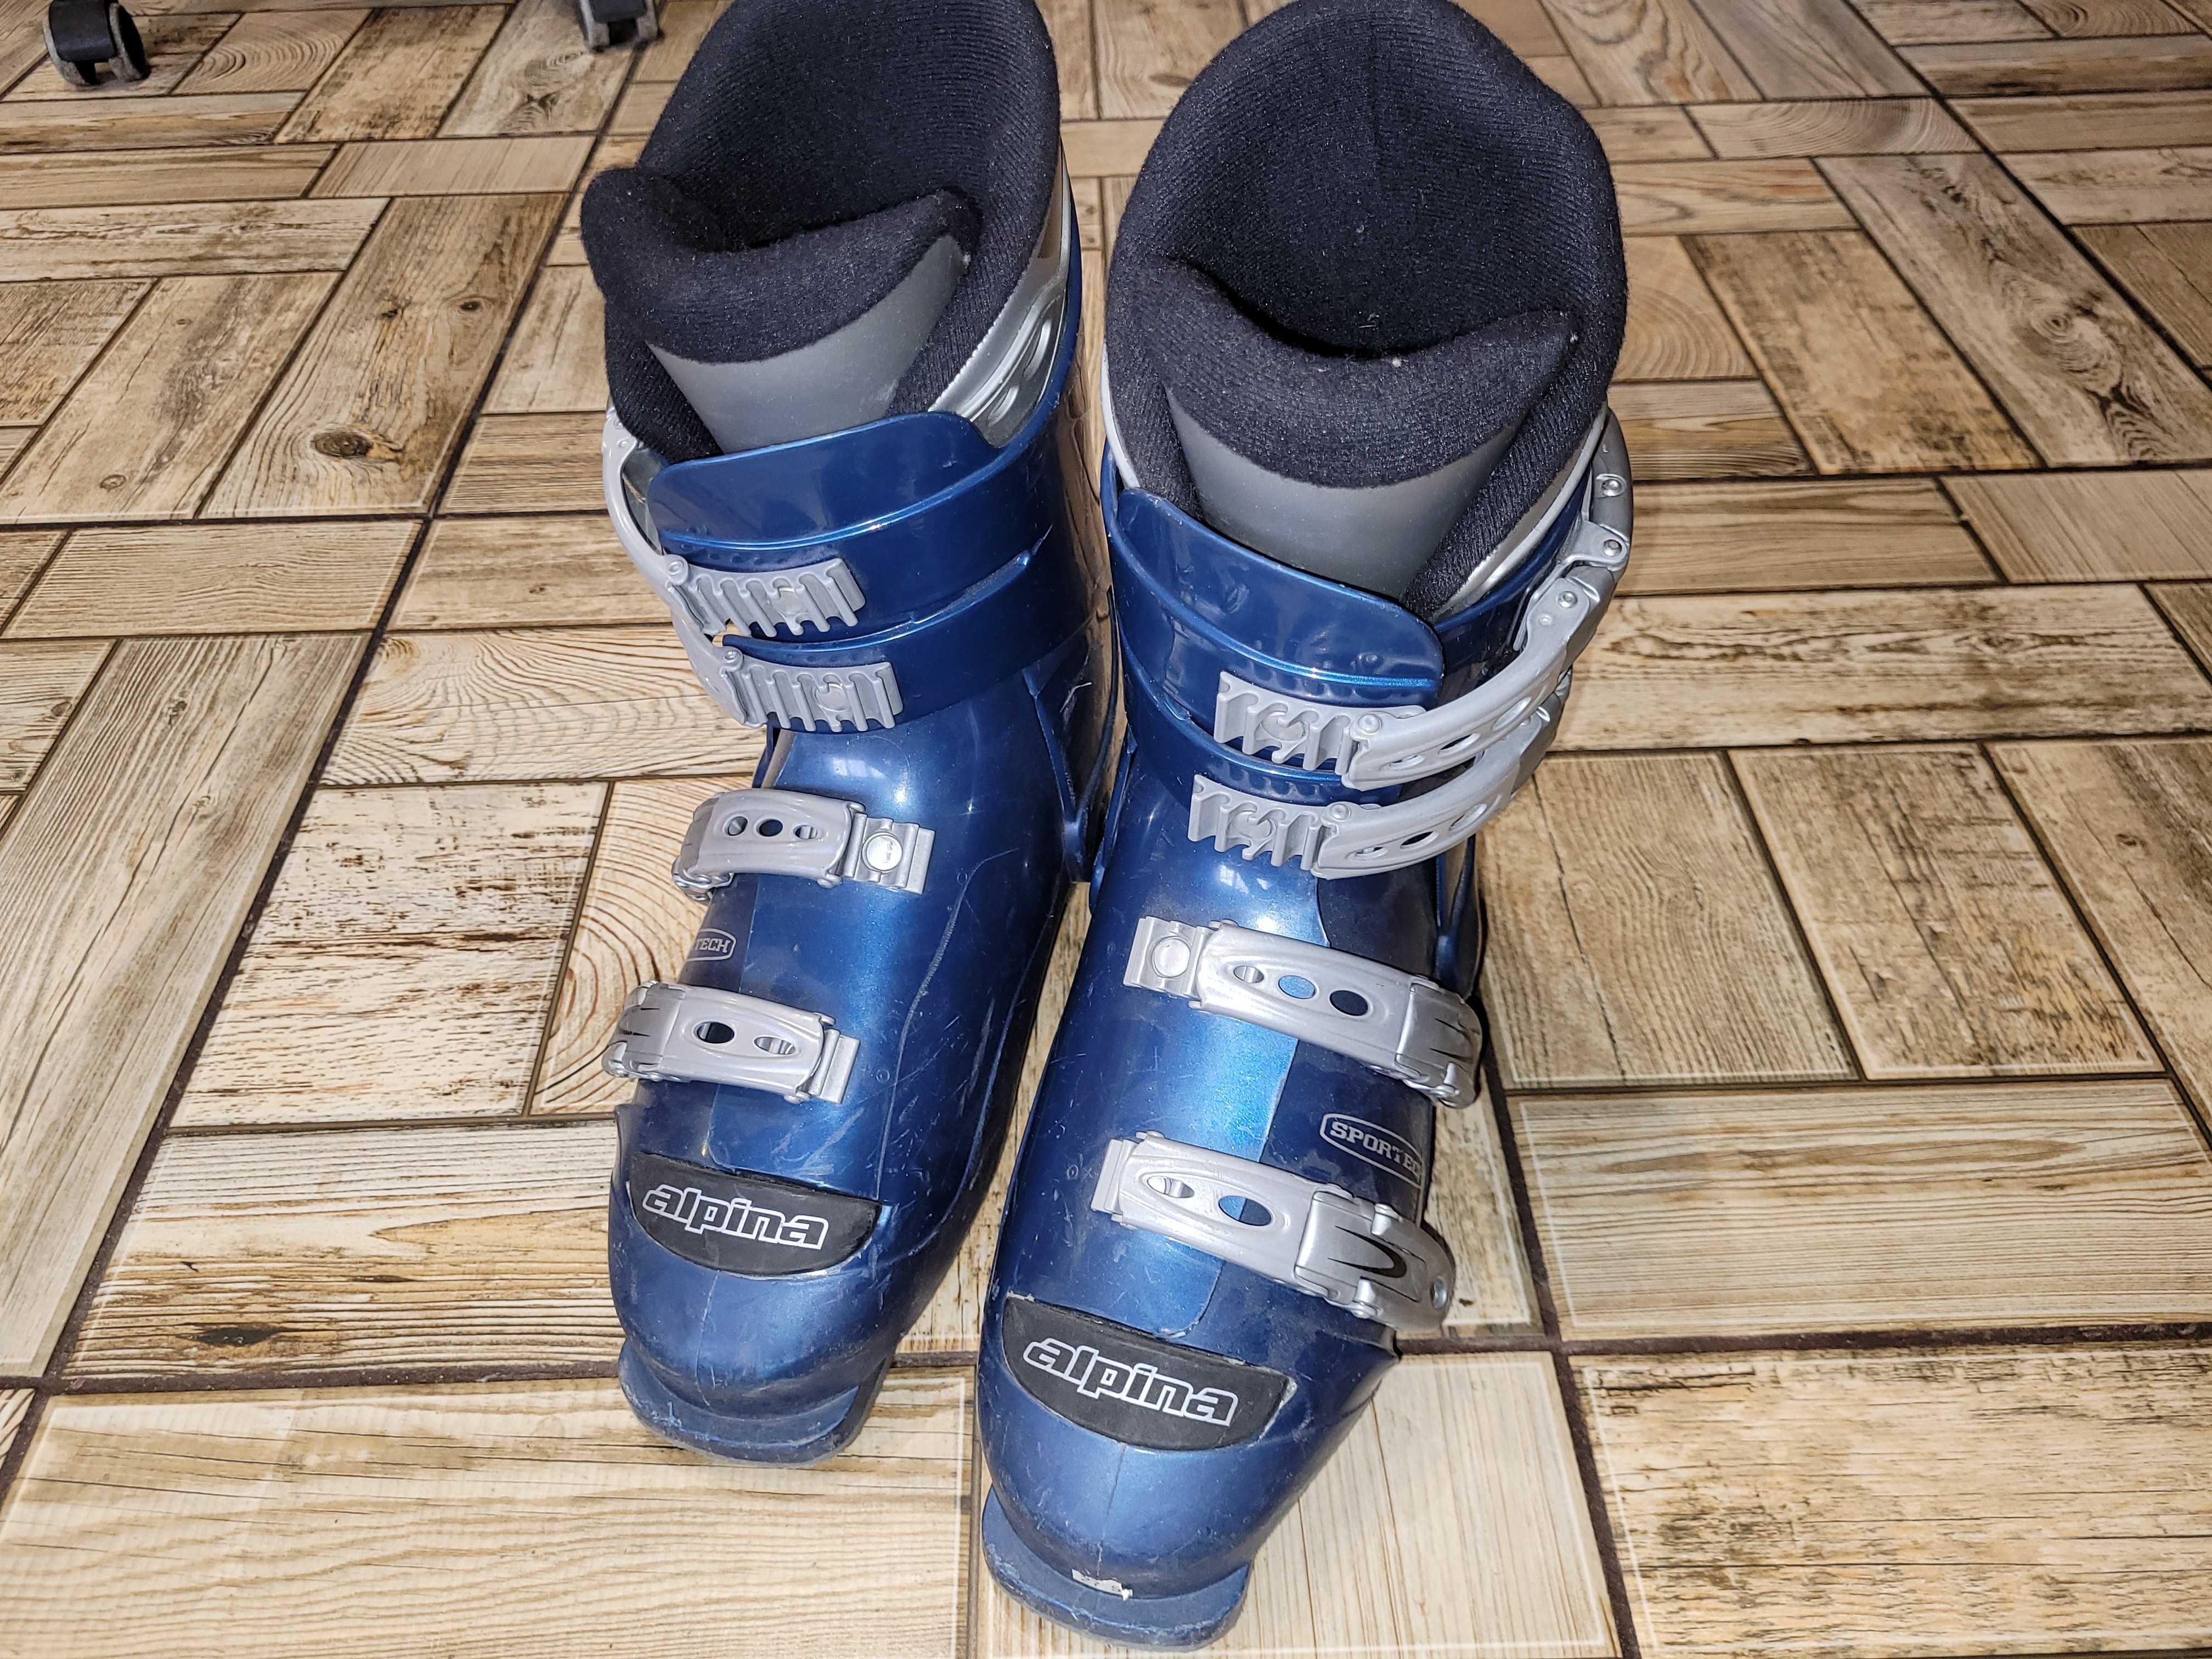 Лыжные ботинки Alpina CM 4 Sportech 27.5 см. Словенія.